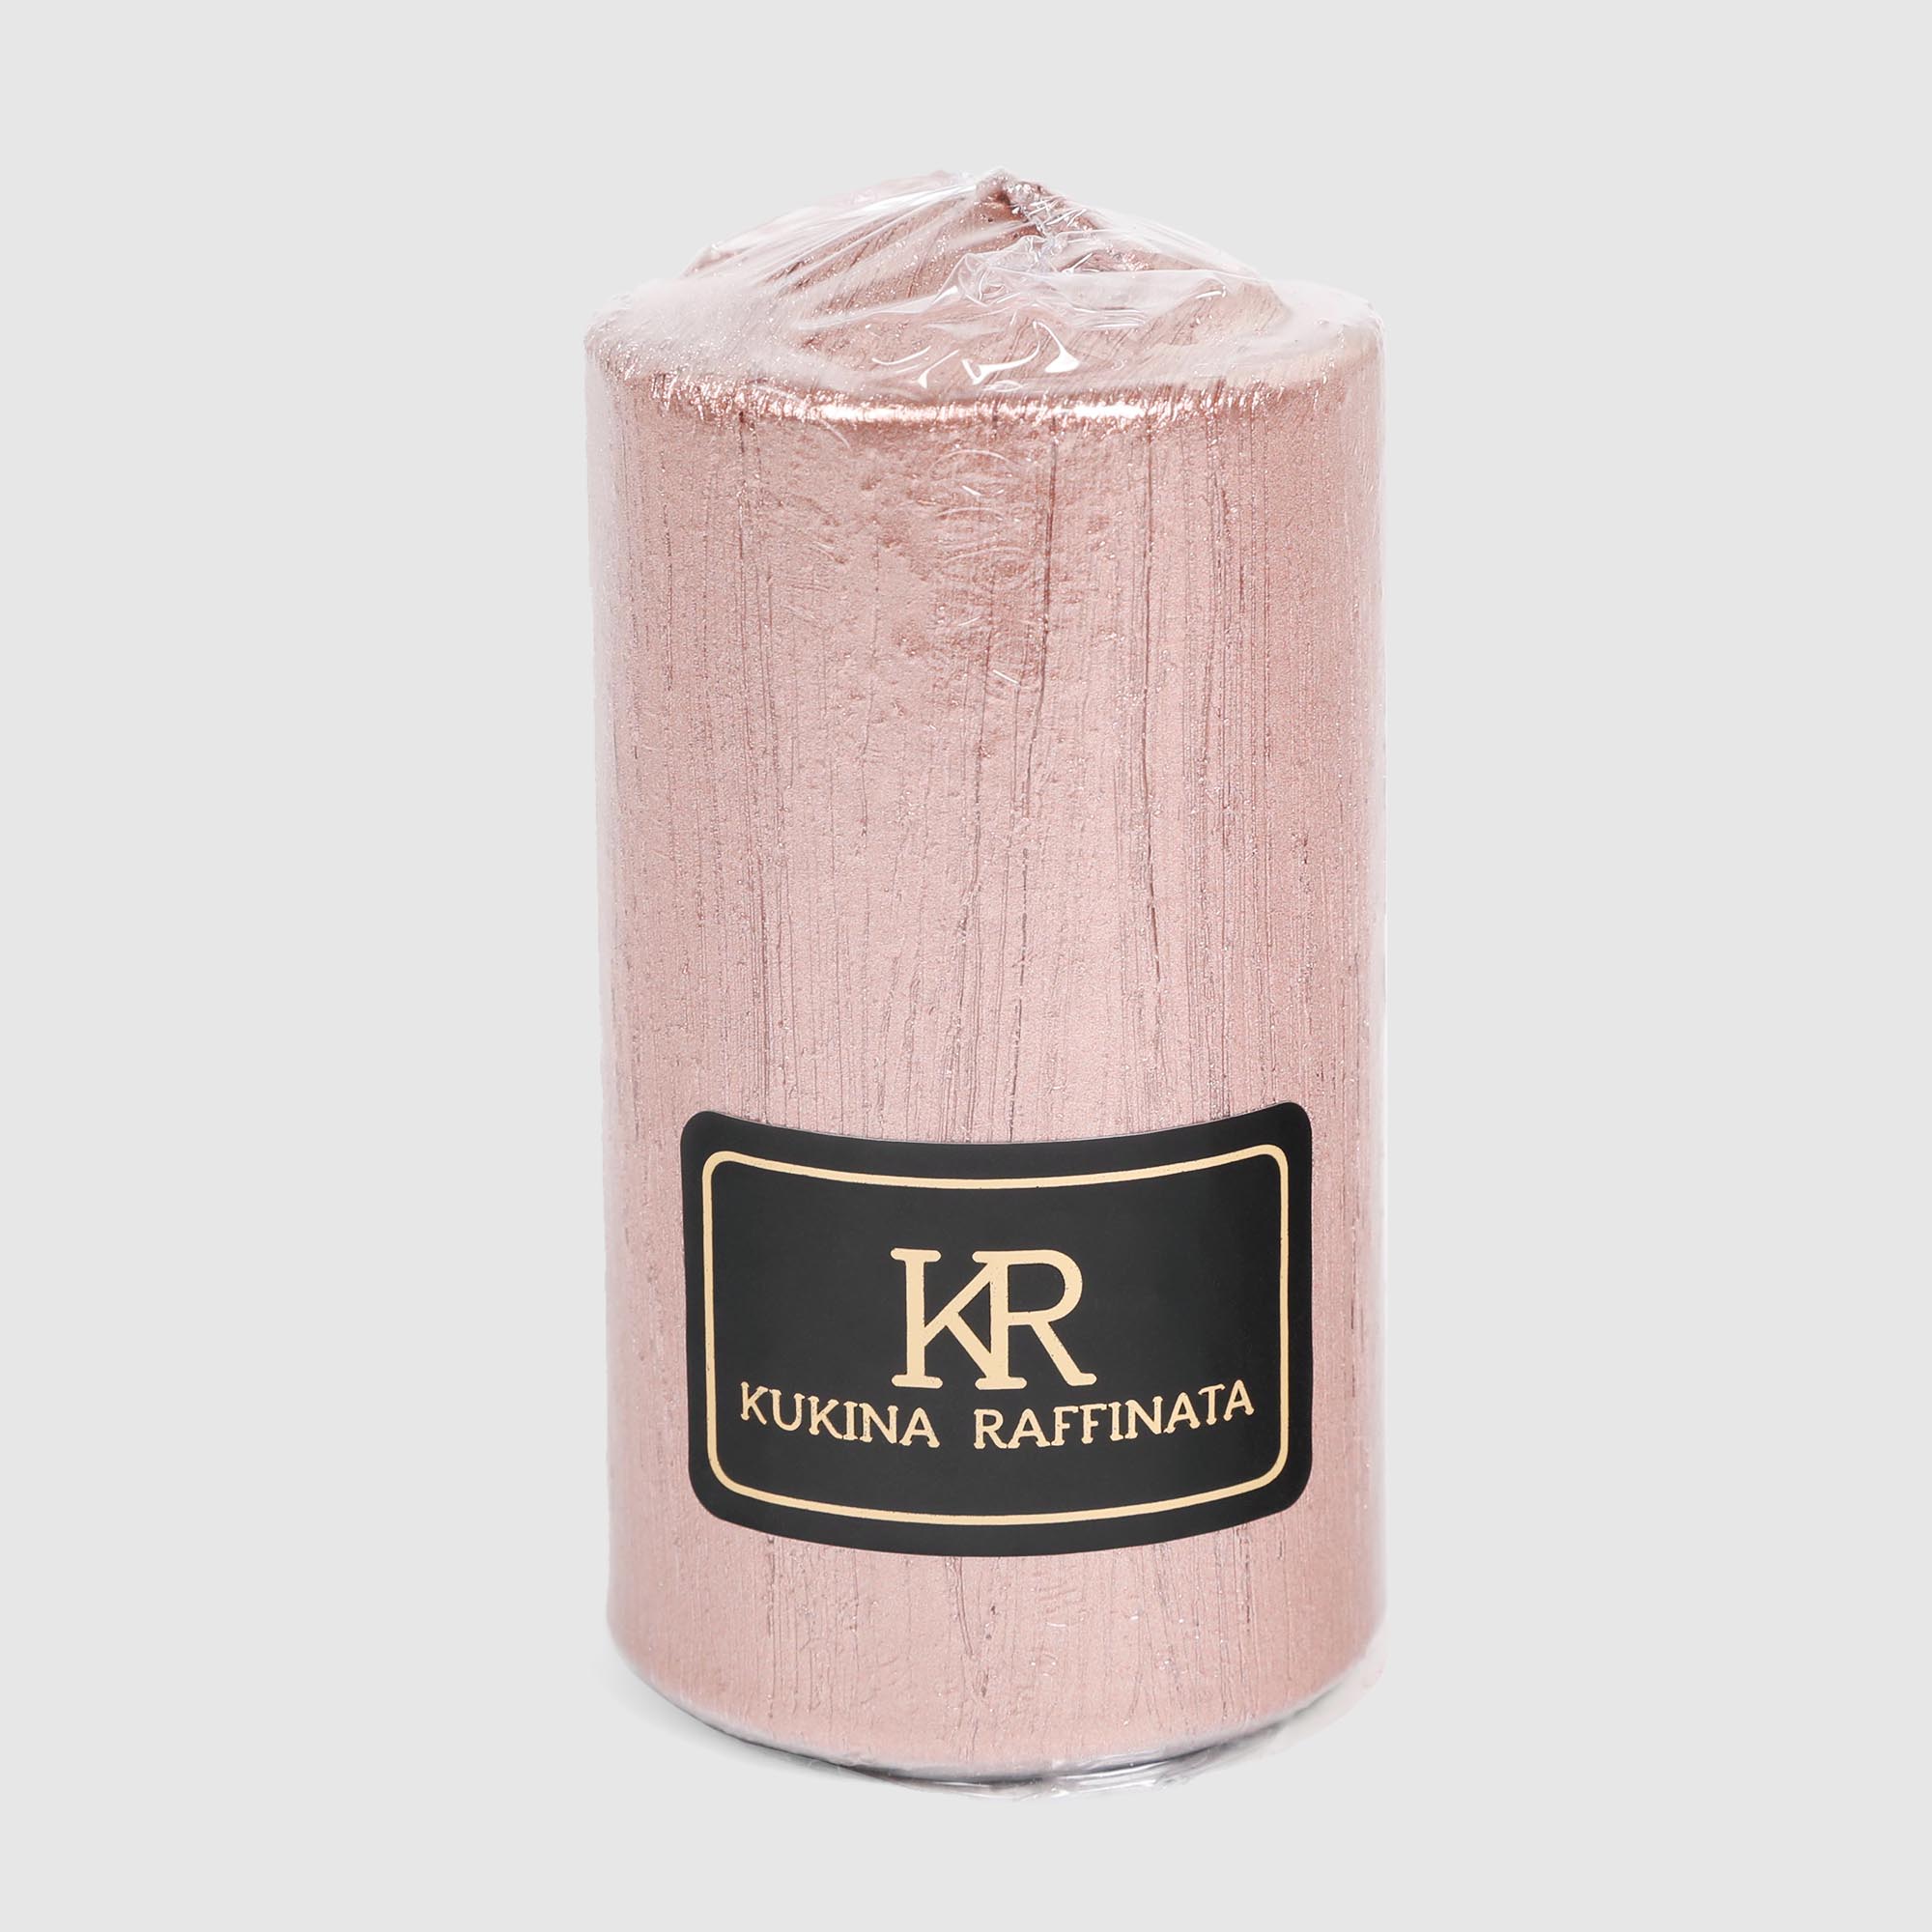 Свеча столбик Kukina Raffinata Винтаж нежно-розовая 5х10 см свеча ок в торт музыкальная розовая